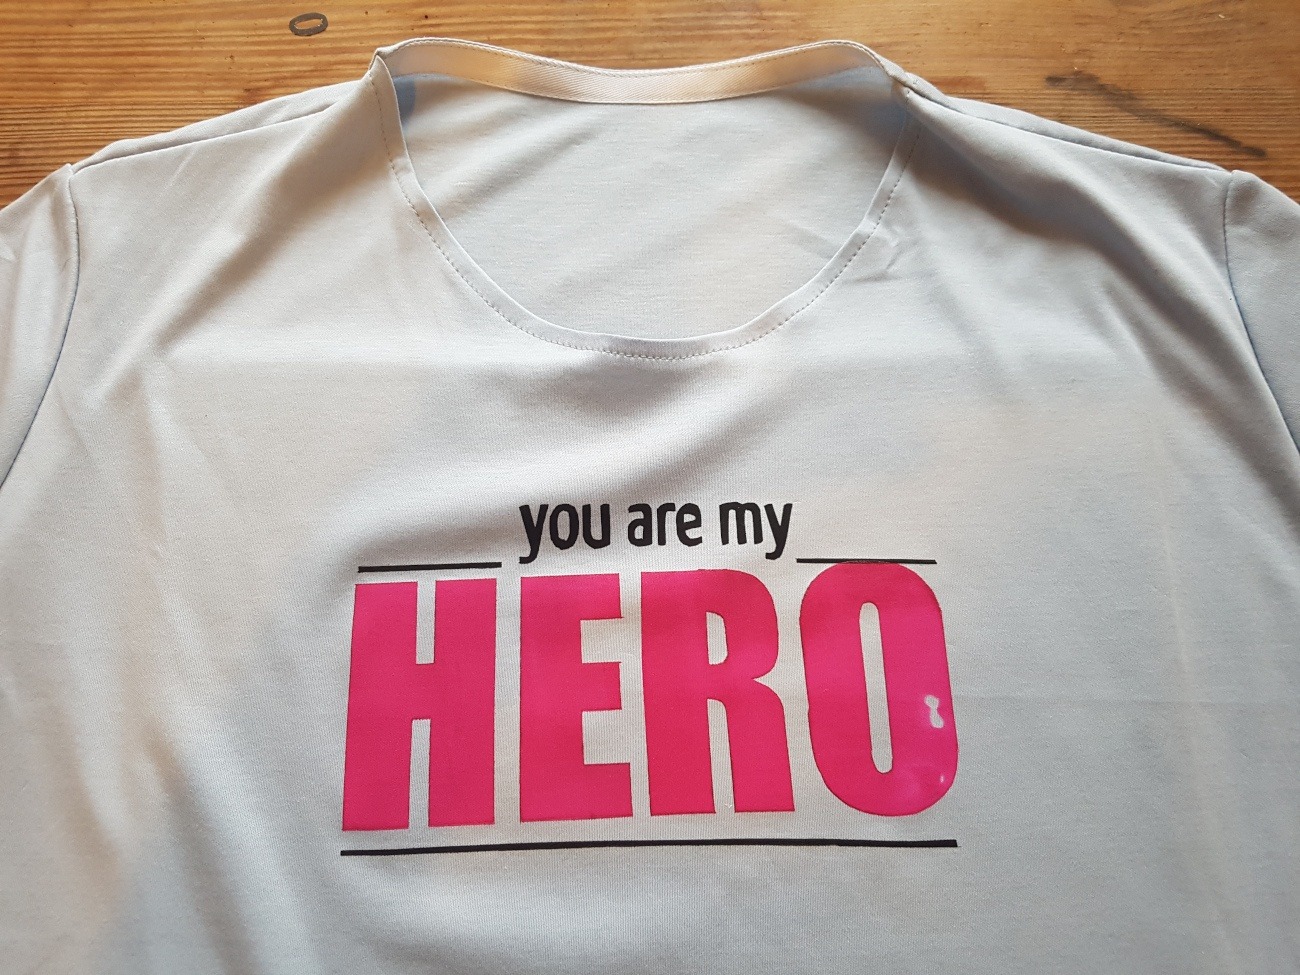 In pinken Buchstaben steht jetzt "HERO" auf dem T-Shirt